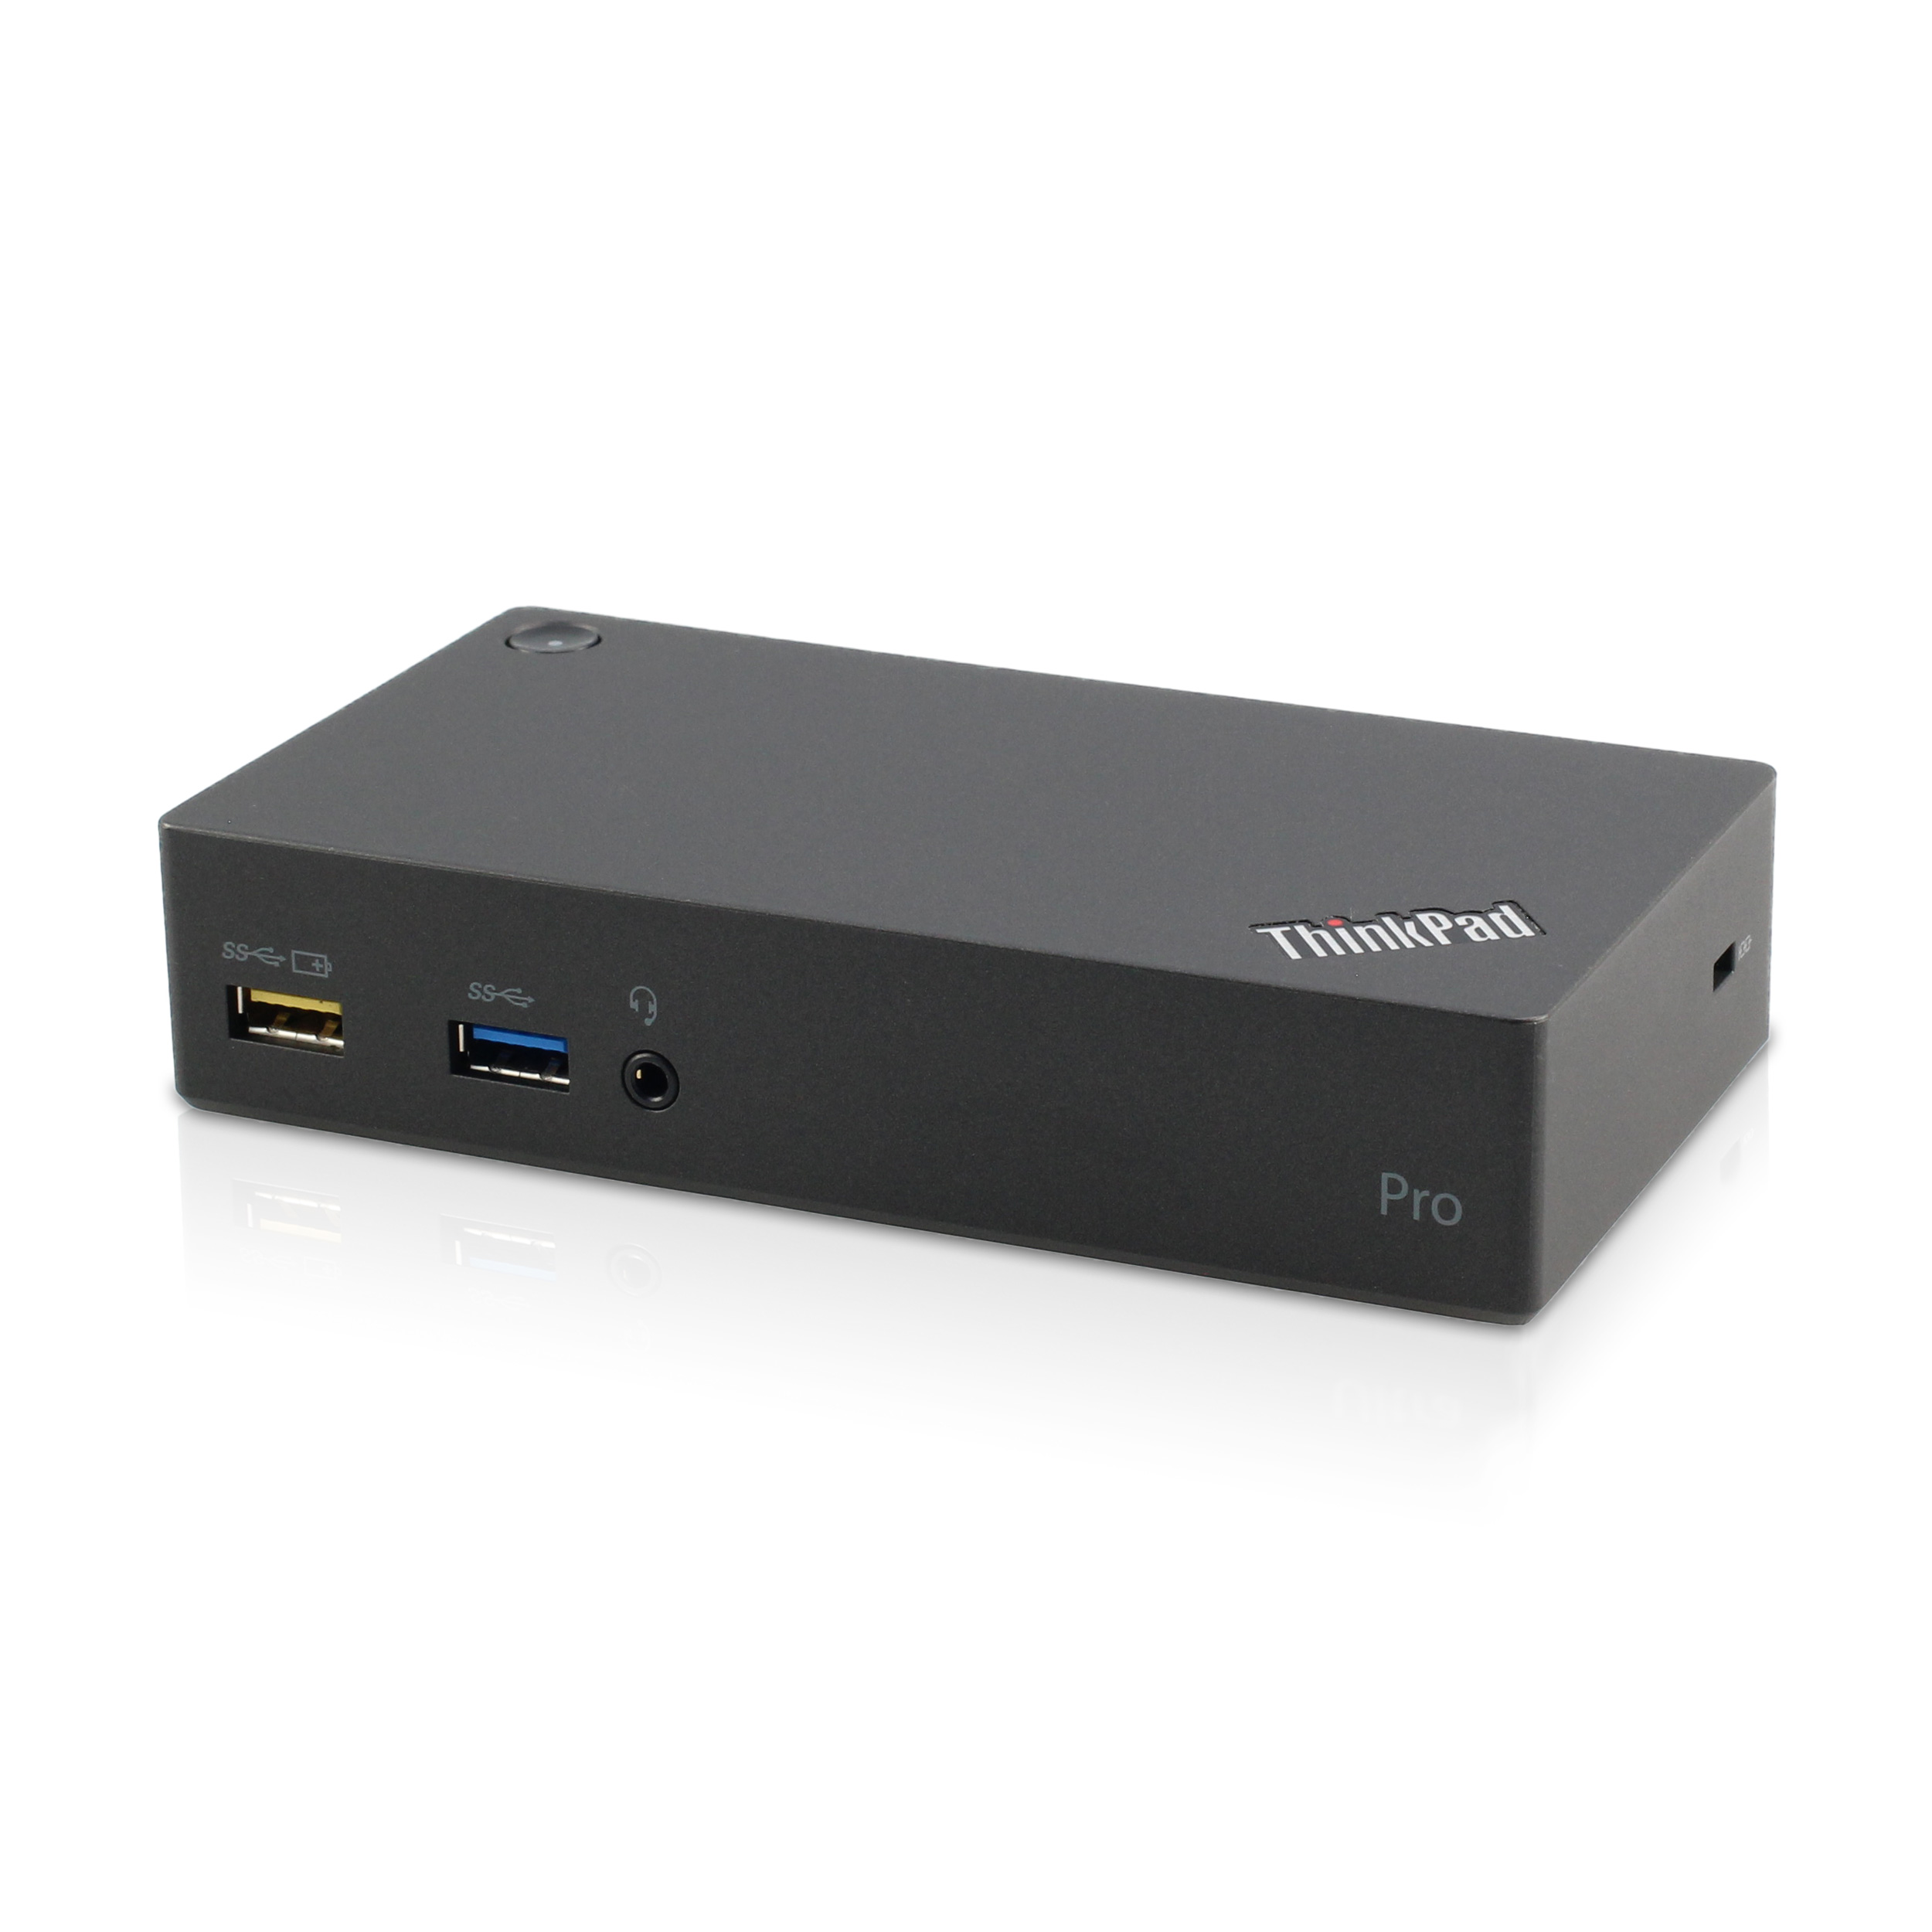 Lenovo ThinkPad USB 3.0 Pro Dock 40A7